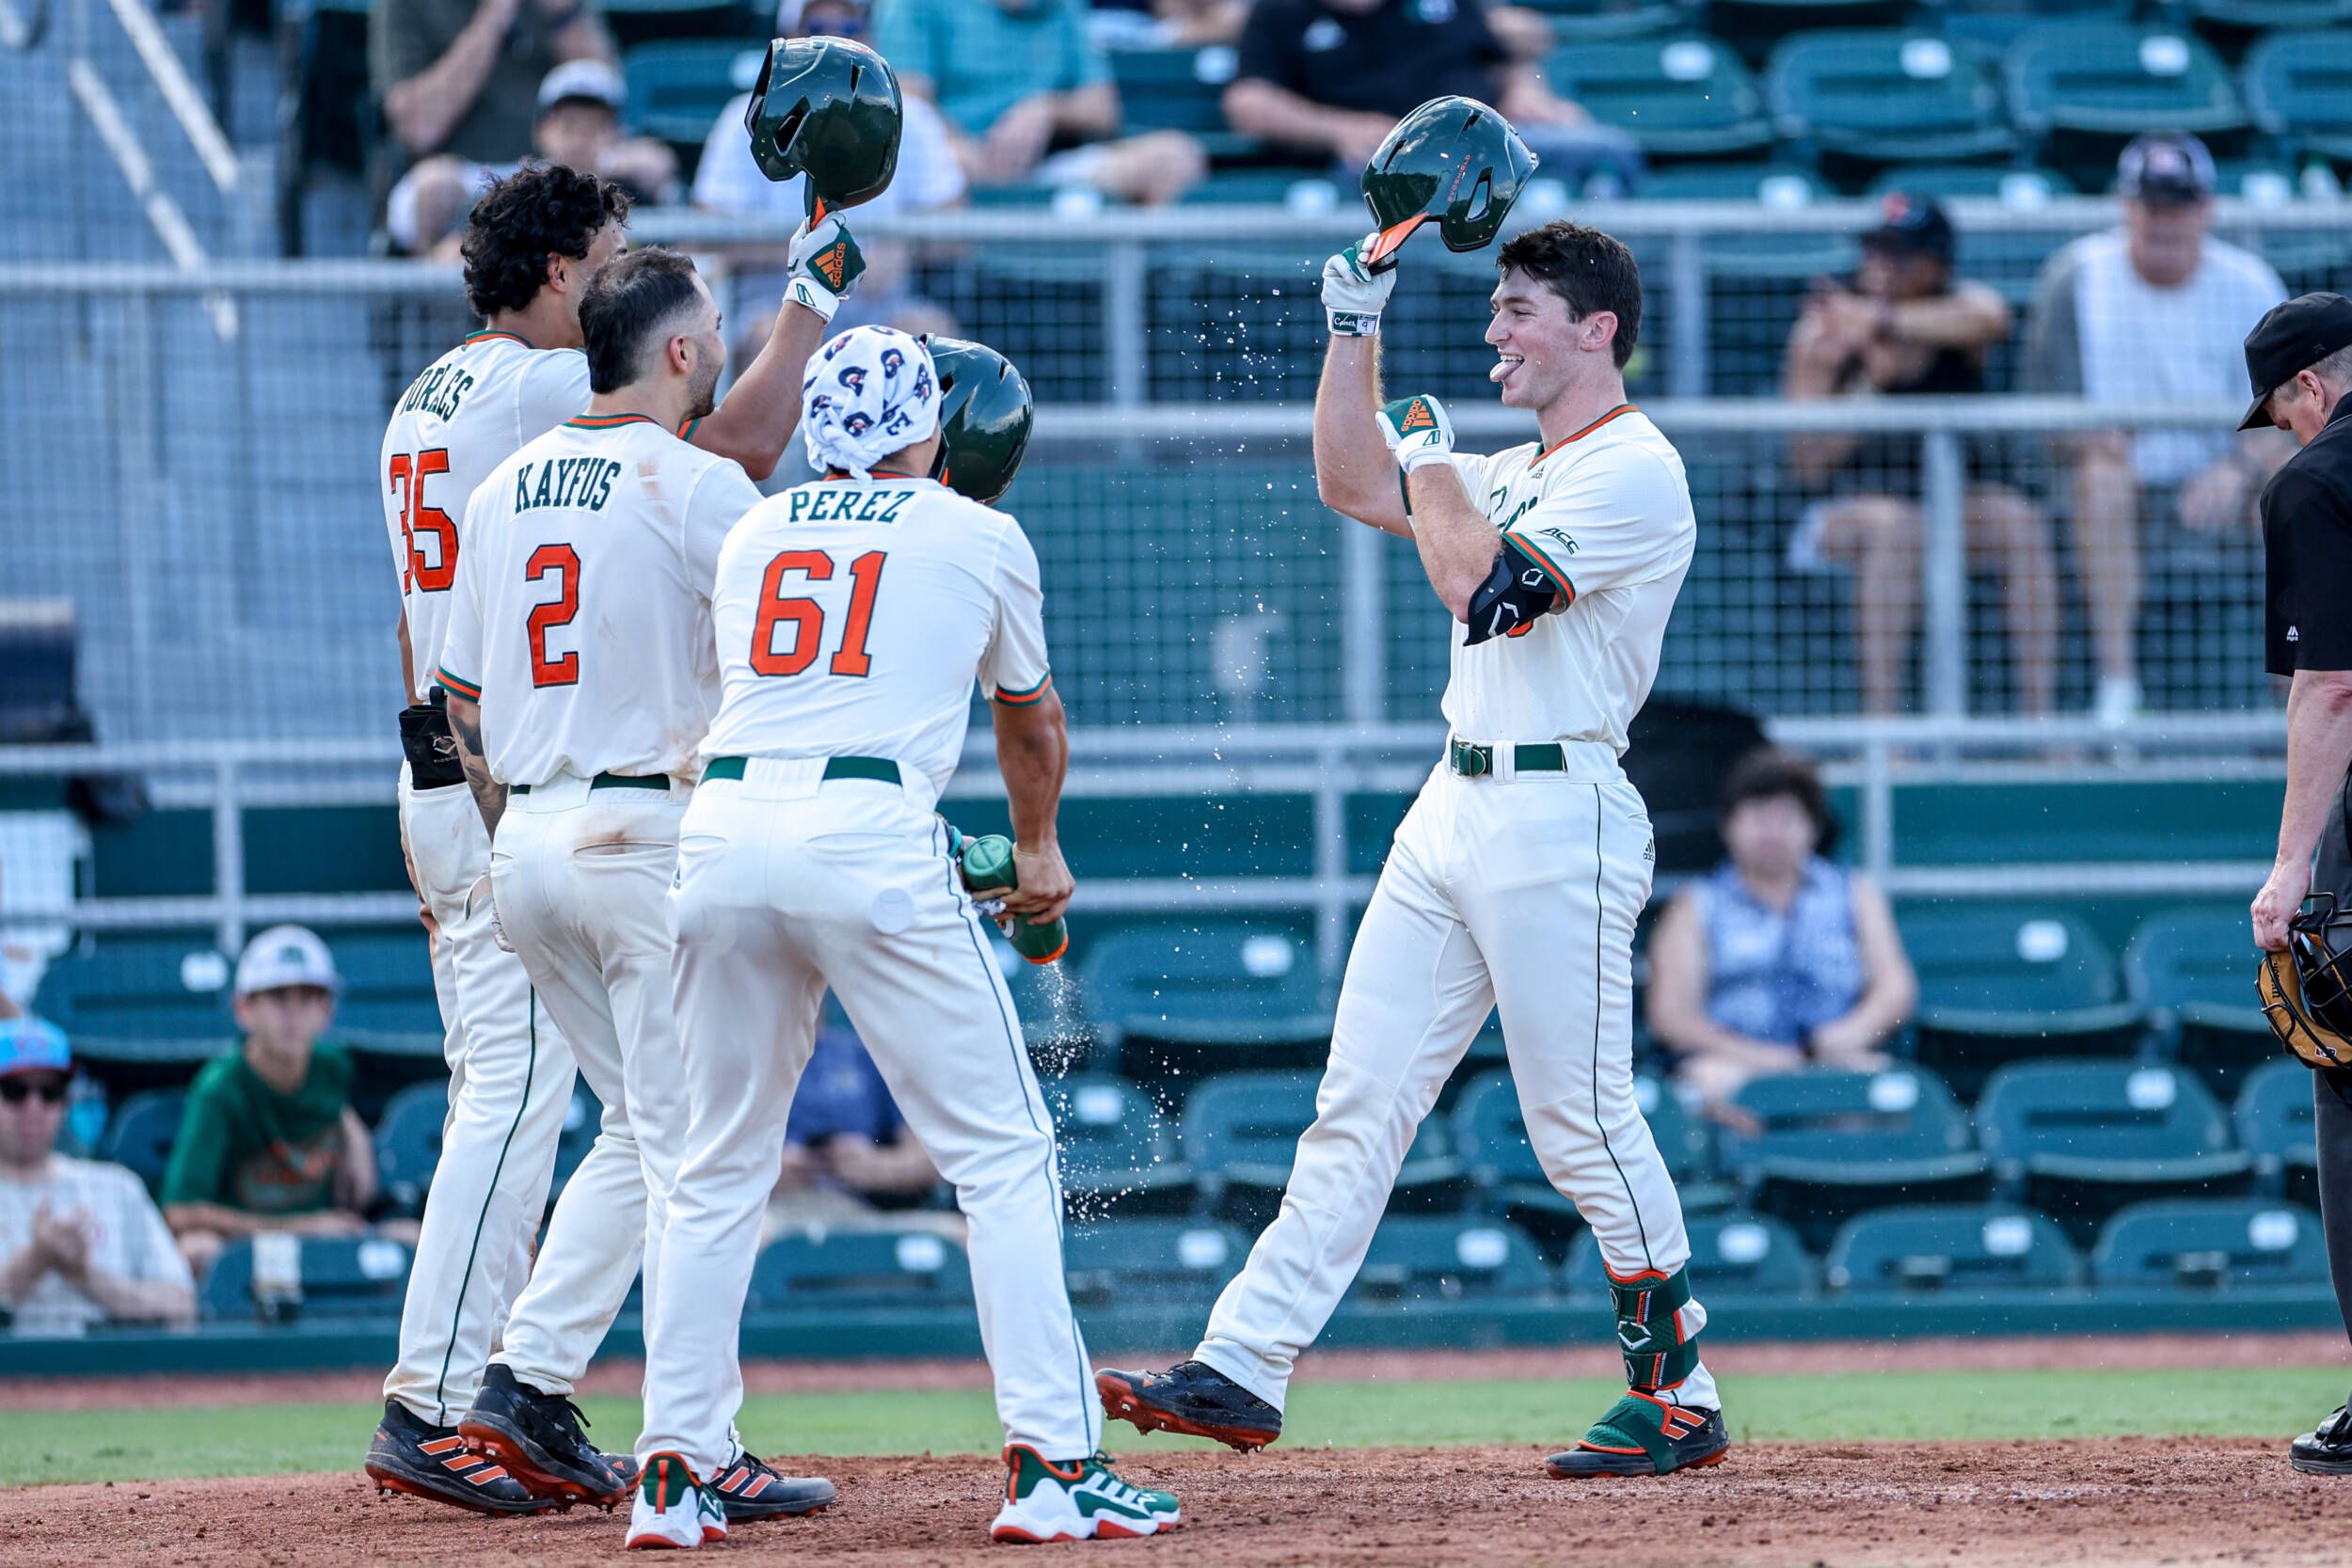 Miami Hurricanes baseball sweeps Towson. Takeaways, analysis